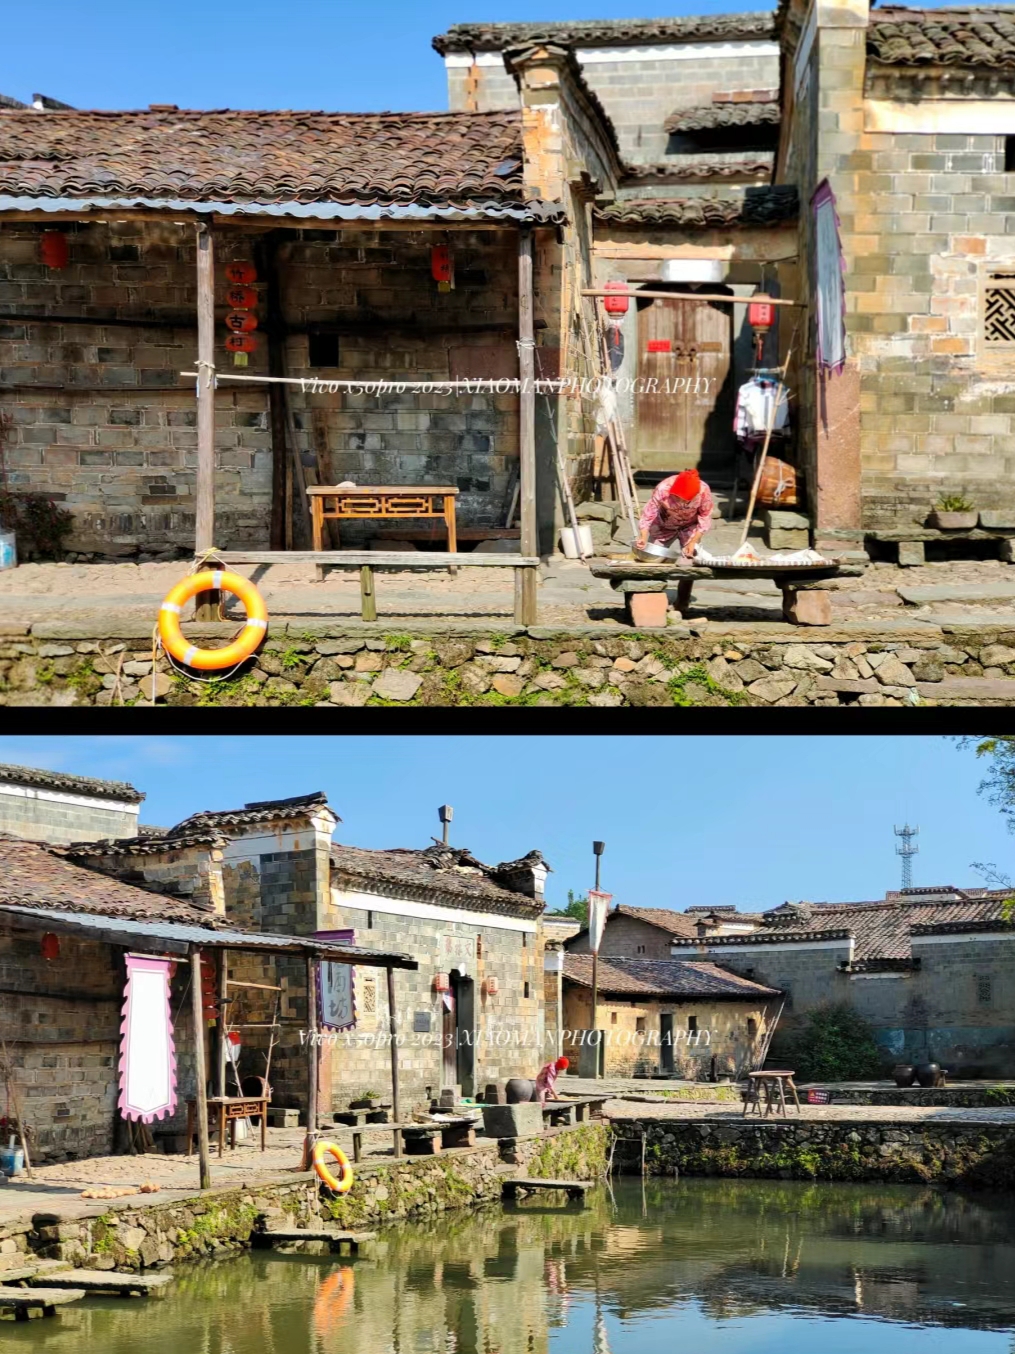 #小众旅行地 #摄影 #抚州金溪 #古村落 #人文景点分享 11月初出差地点以为在抚州市区，到了才发